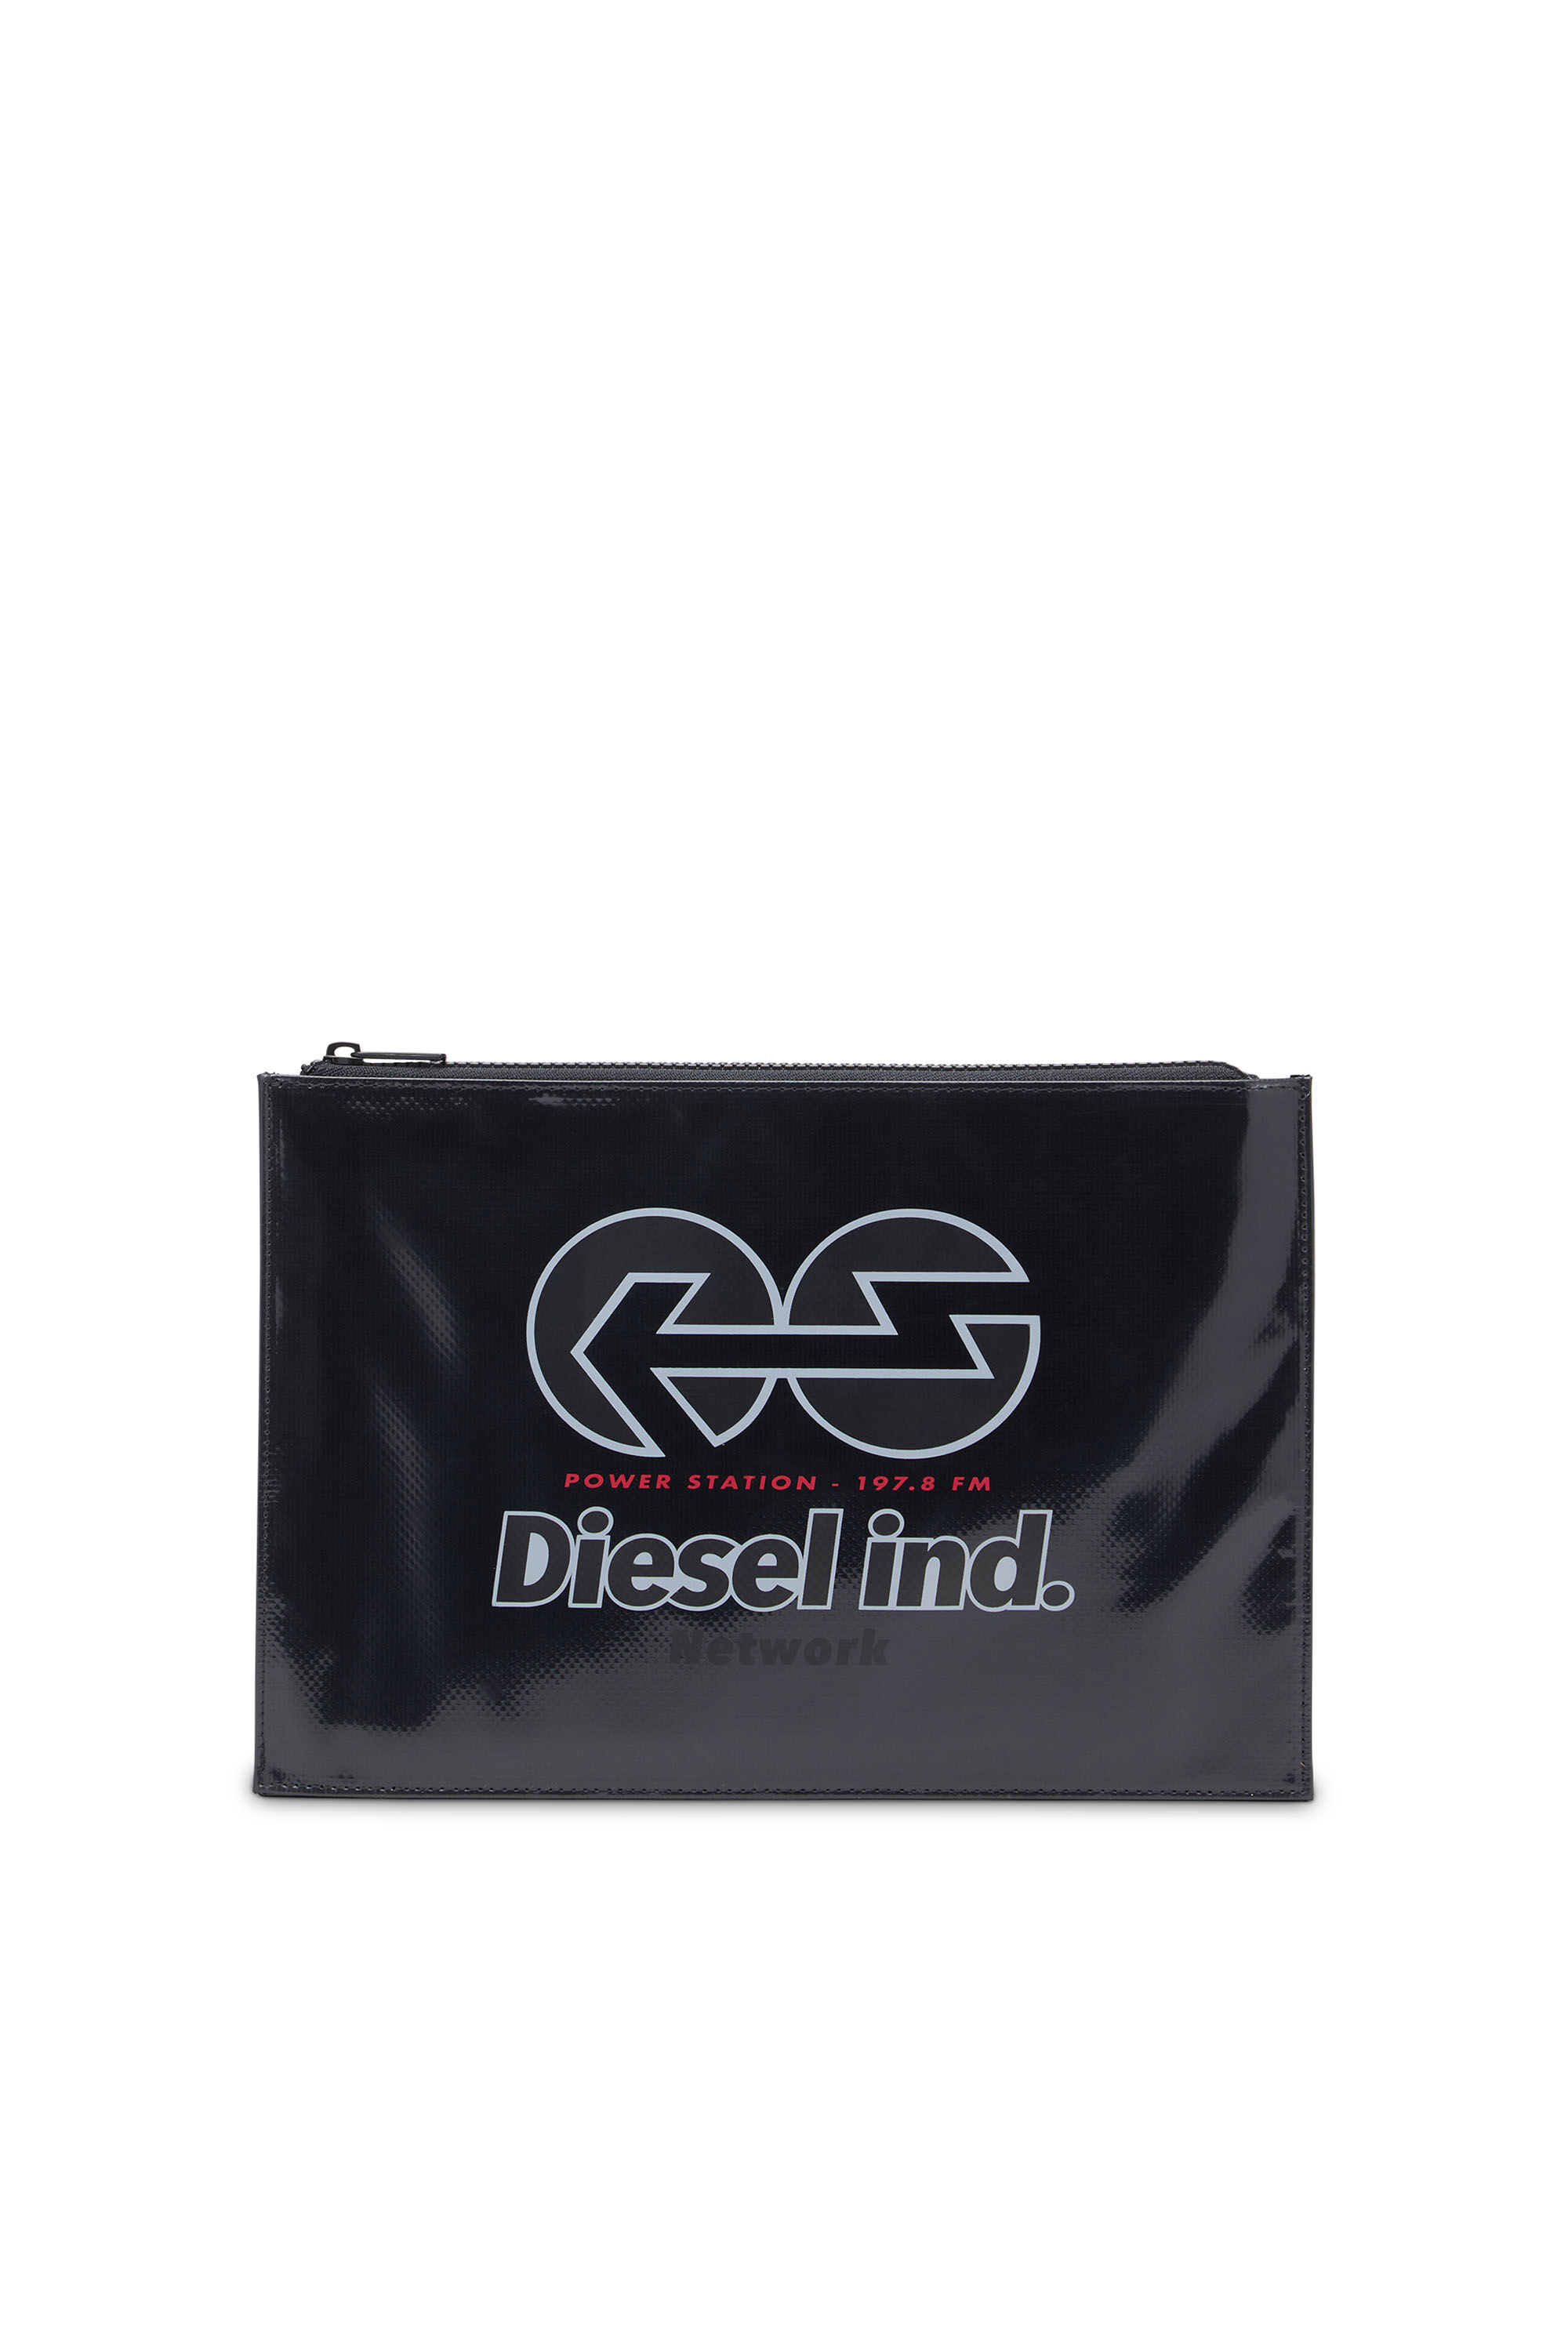 Diesel - PAOULDA,  - Image 1